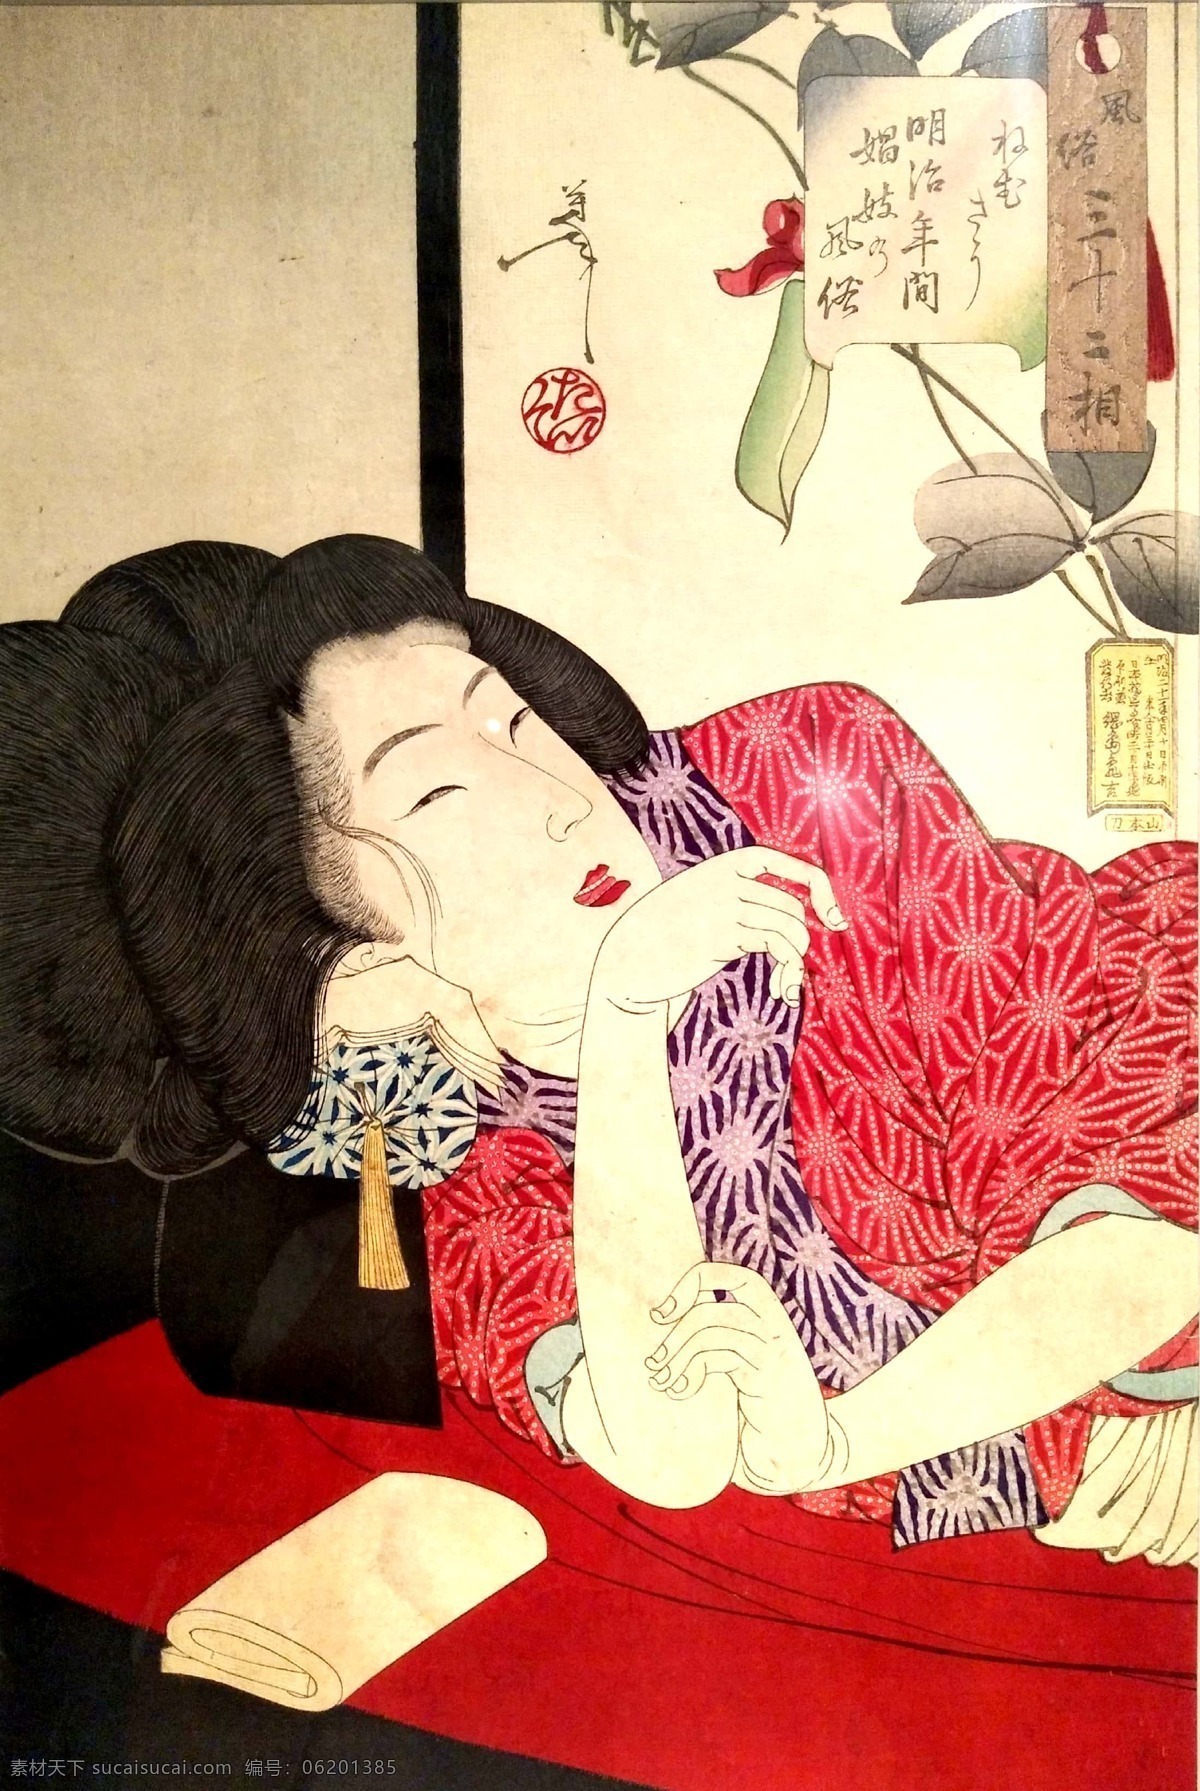 浮世绘 日本 风俗画 妖怪 原作 文化艺术 绘画书法